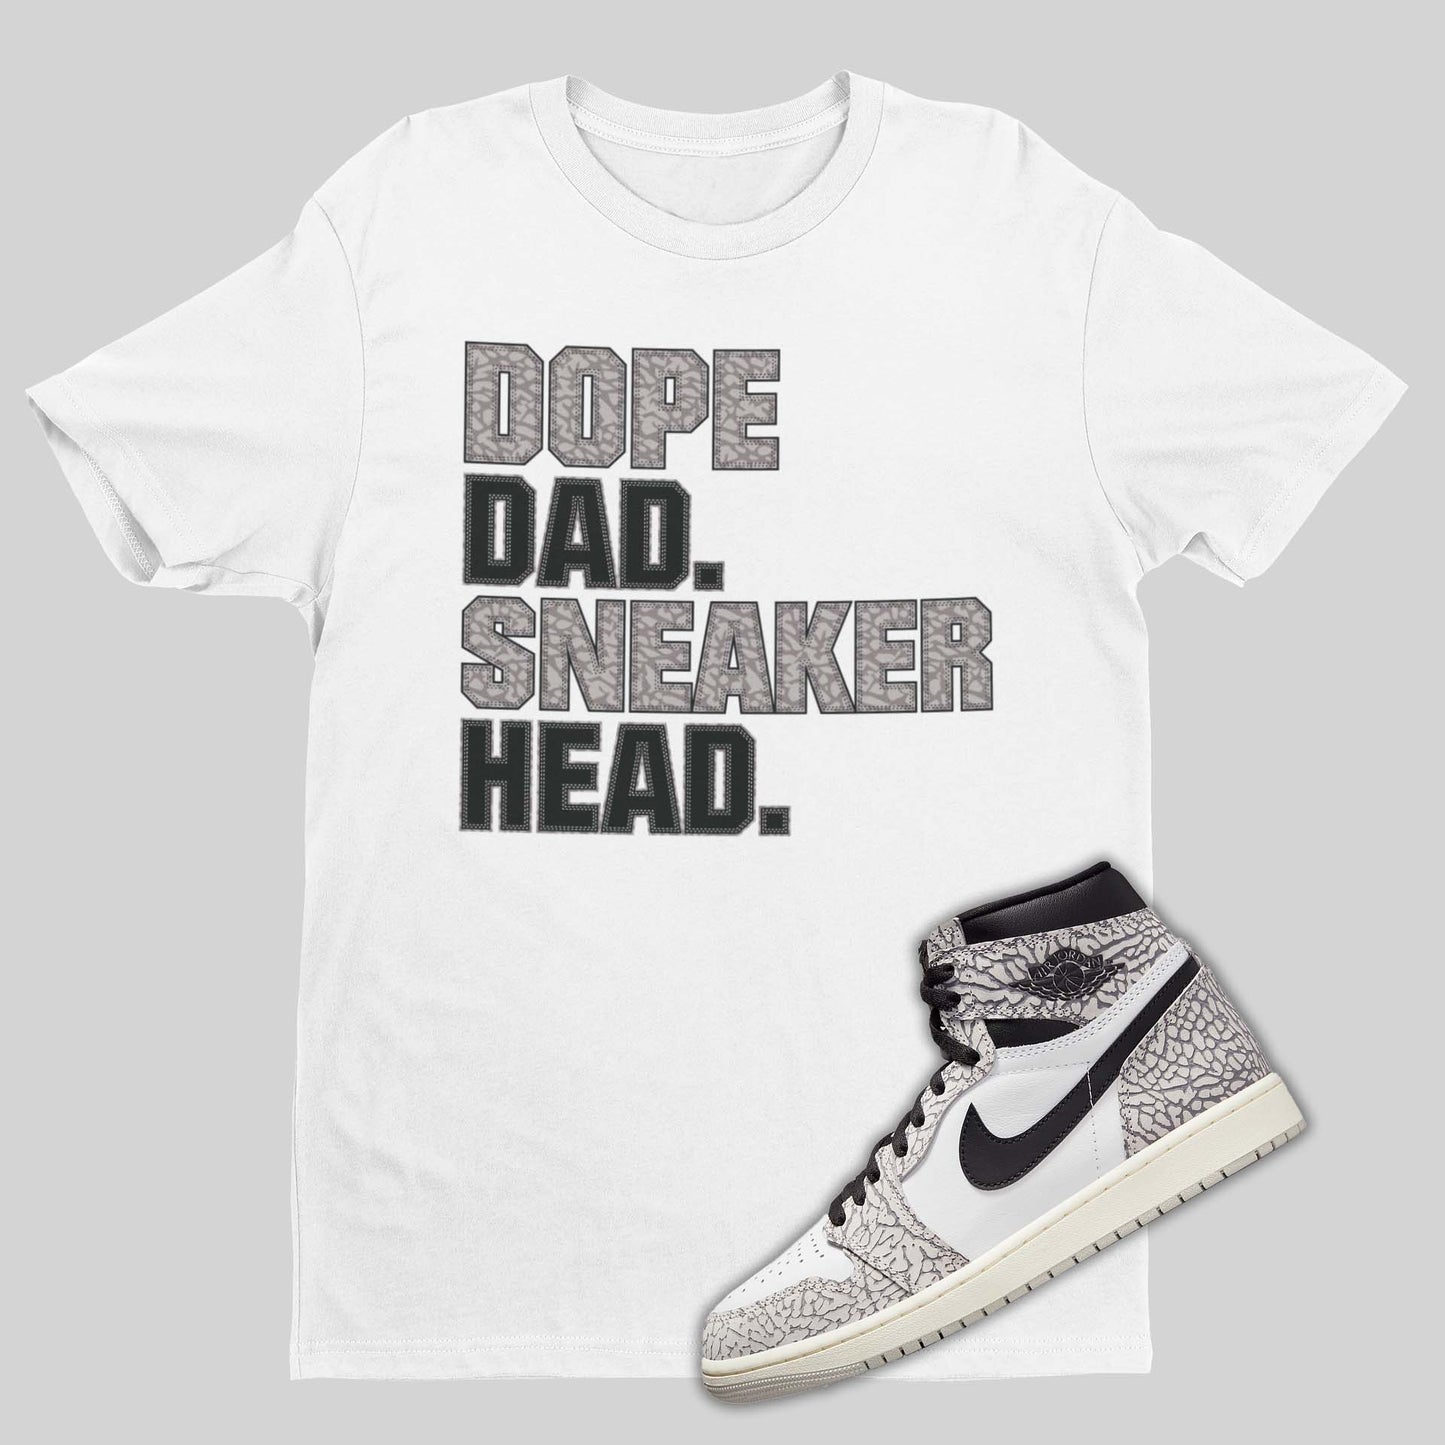 Air Jordan 1 Retro High OG White Cement shirt for dads in white